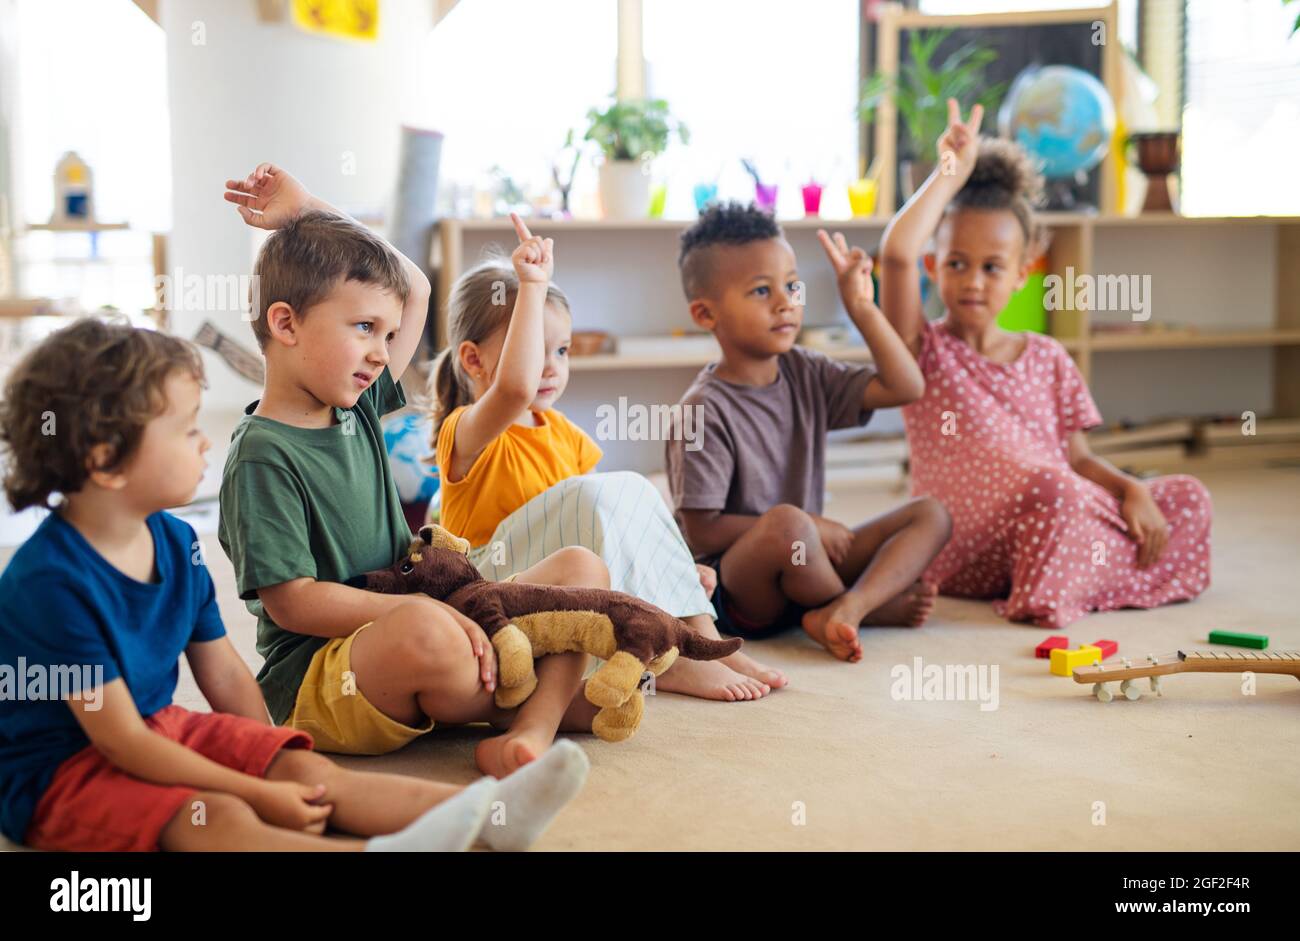 Gruppe von kleinen Kindergartenkindern, die im Klassenzimmer auf dem Boden sitzen und die Hände heben. Stockfoto